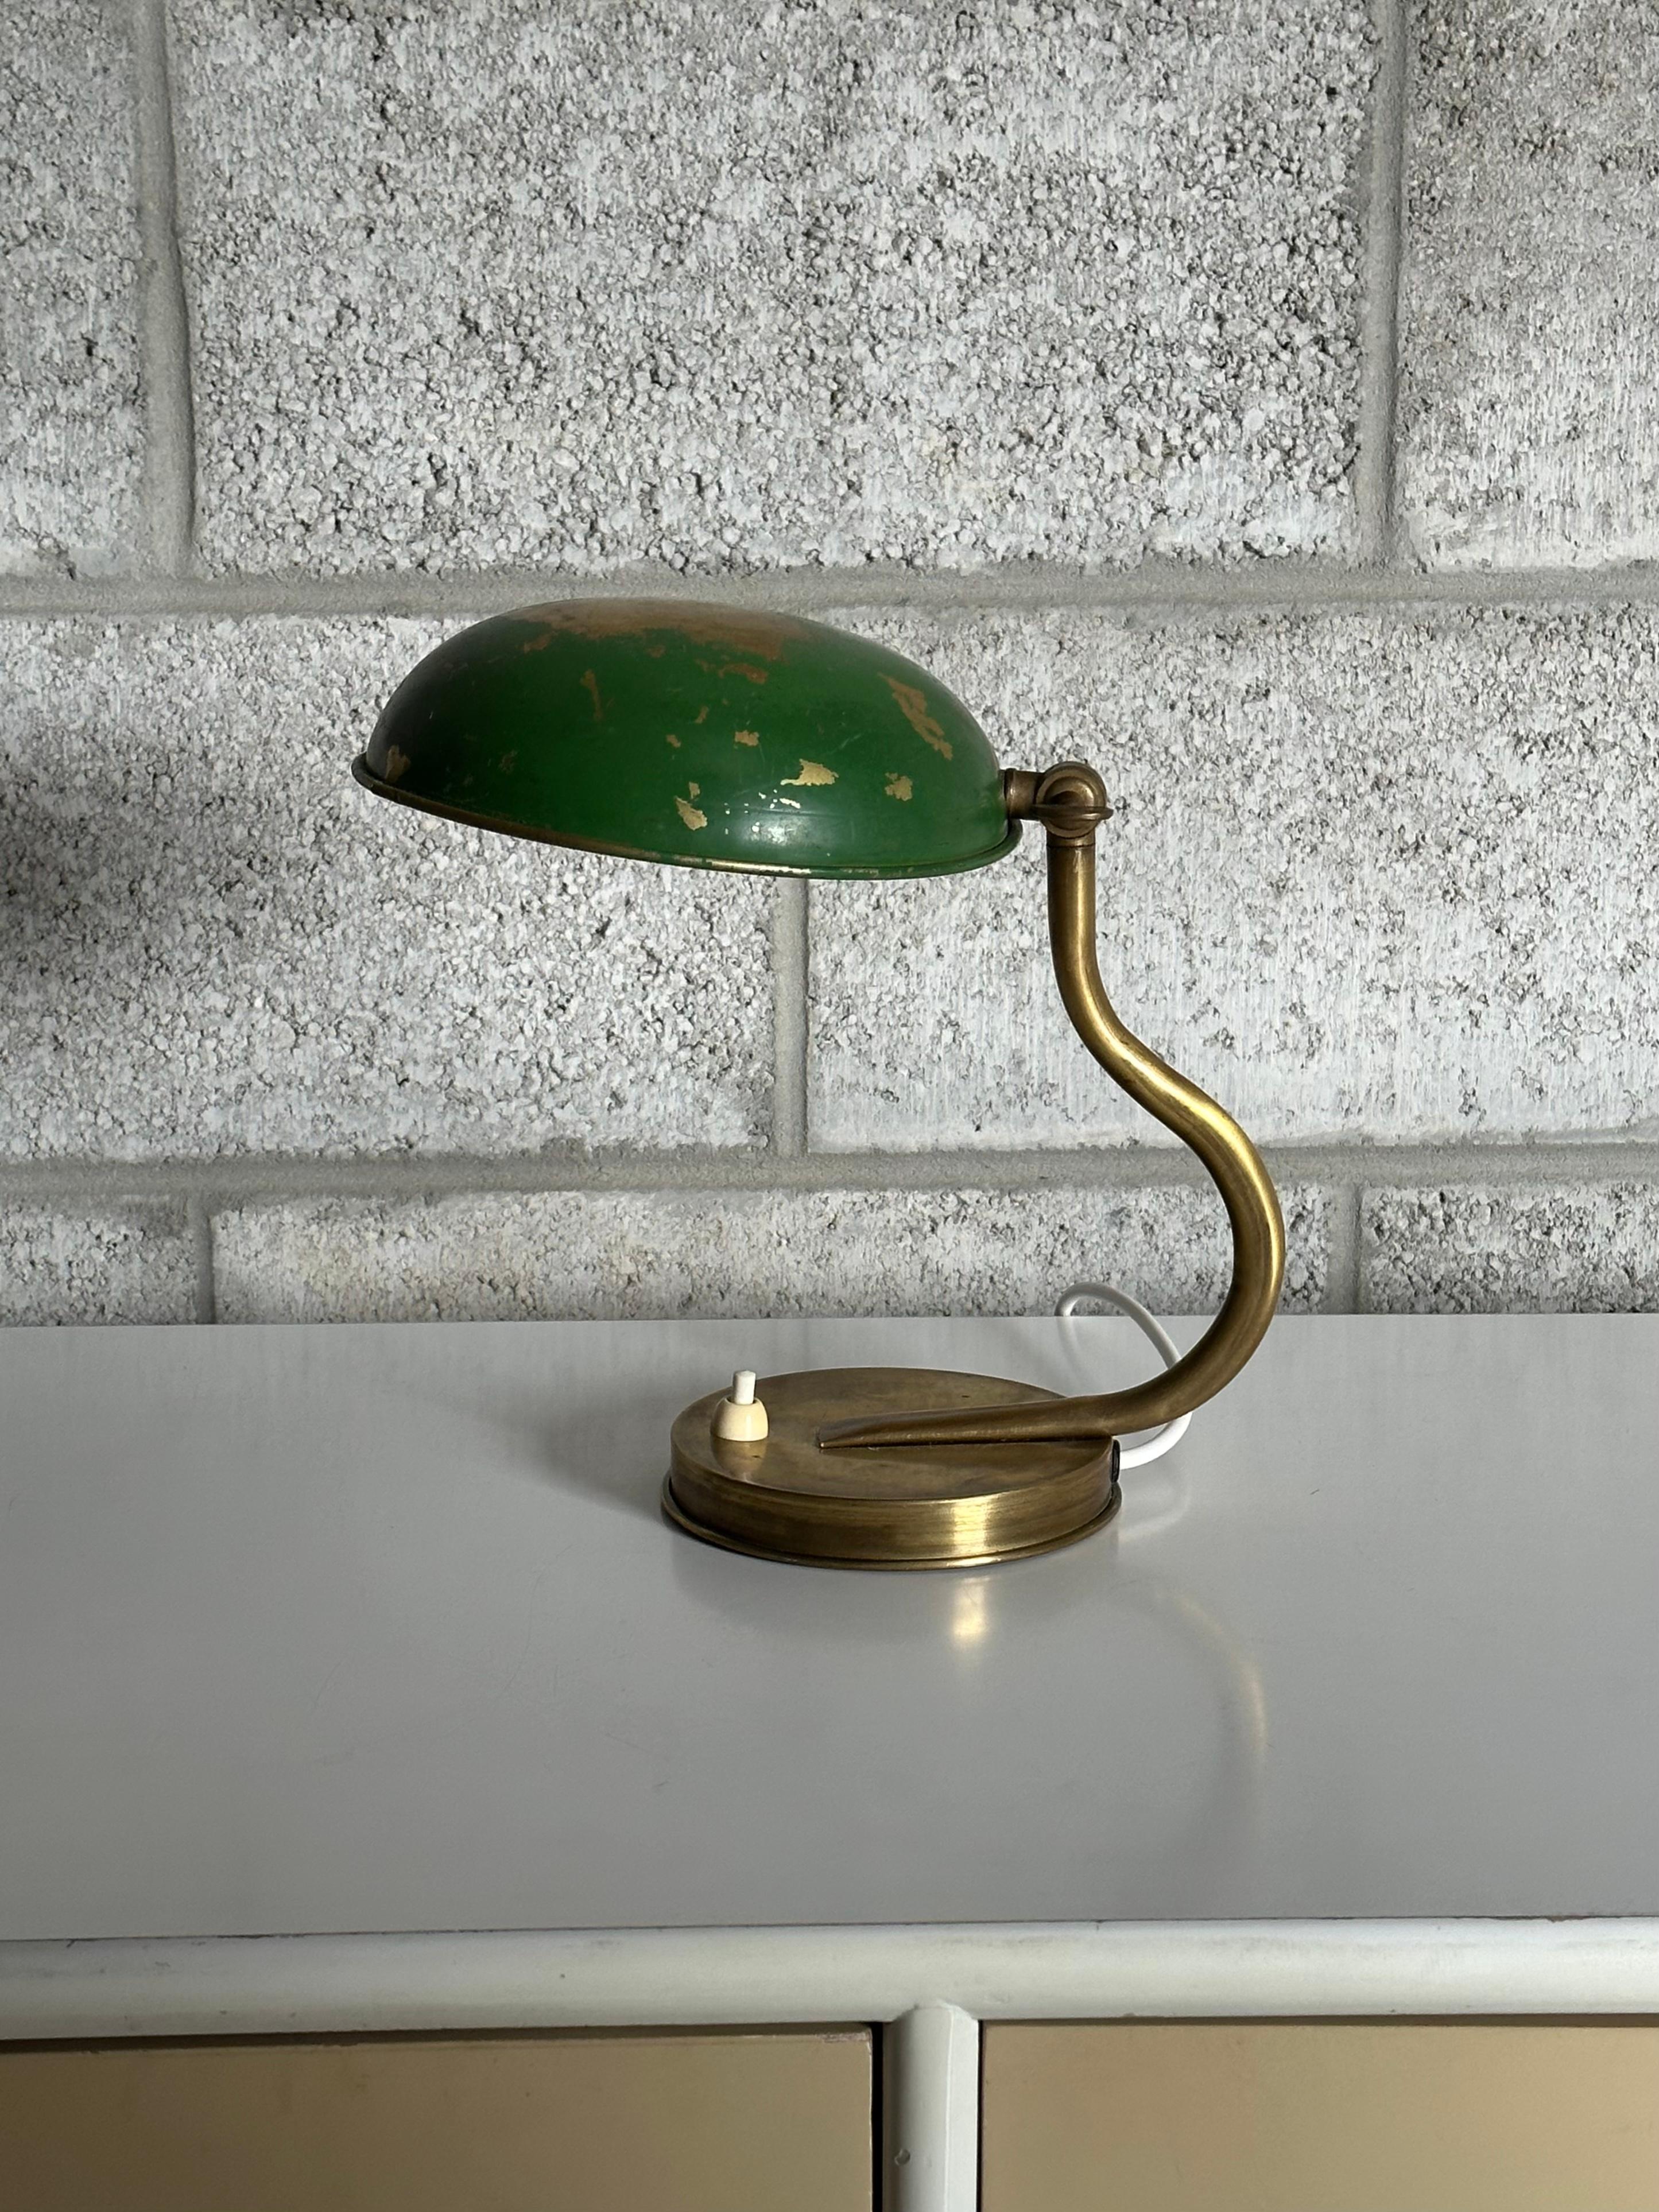 Une petite lampe de table ou applique murale unique d'ASEA et attribuée à Hans Bergström. Cette lampe est dotée d'un fond avec une découpe dans la plaque de base qui permet de la suspendre au mur à l'aide d'un clou ou d'une vis. Merveilleuse forme